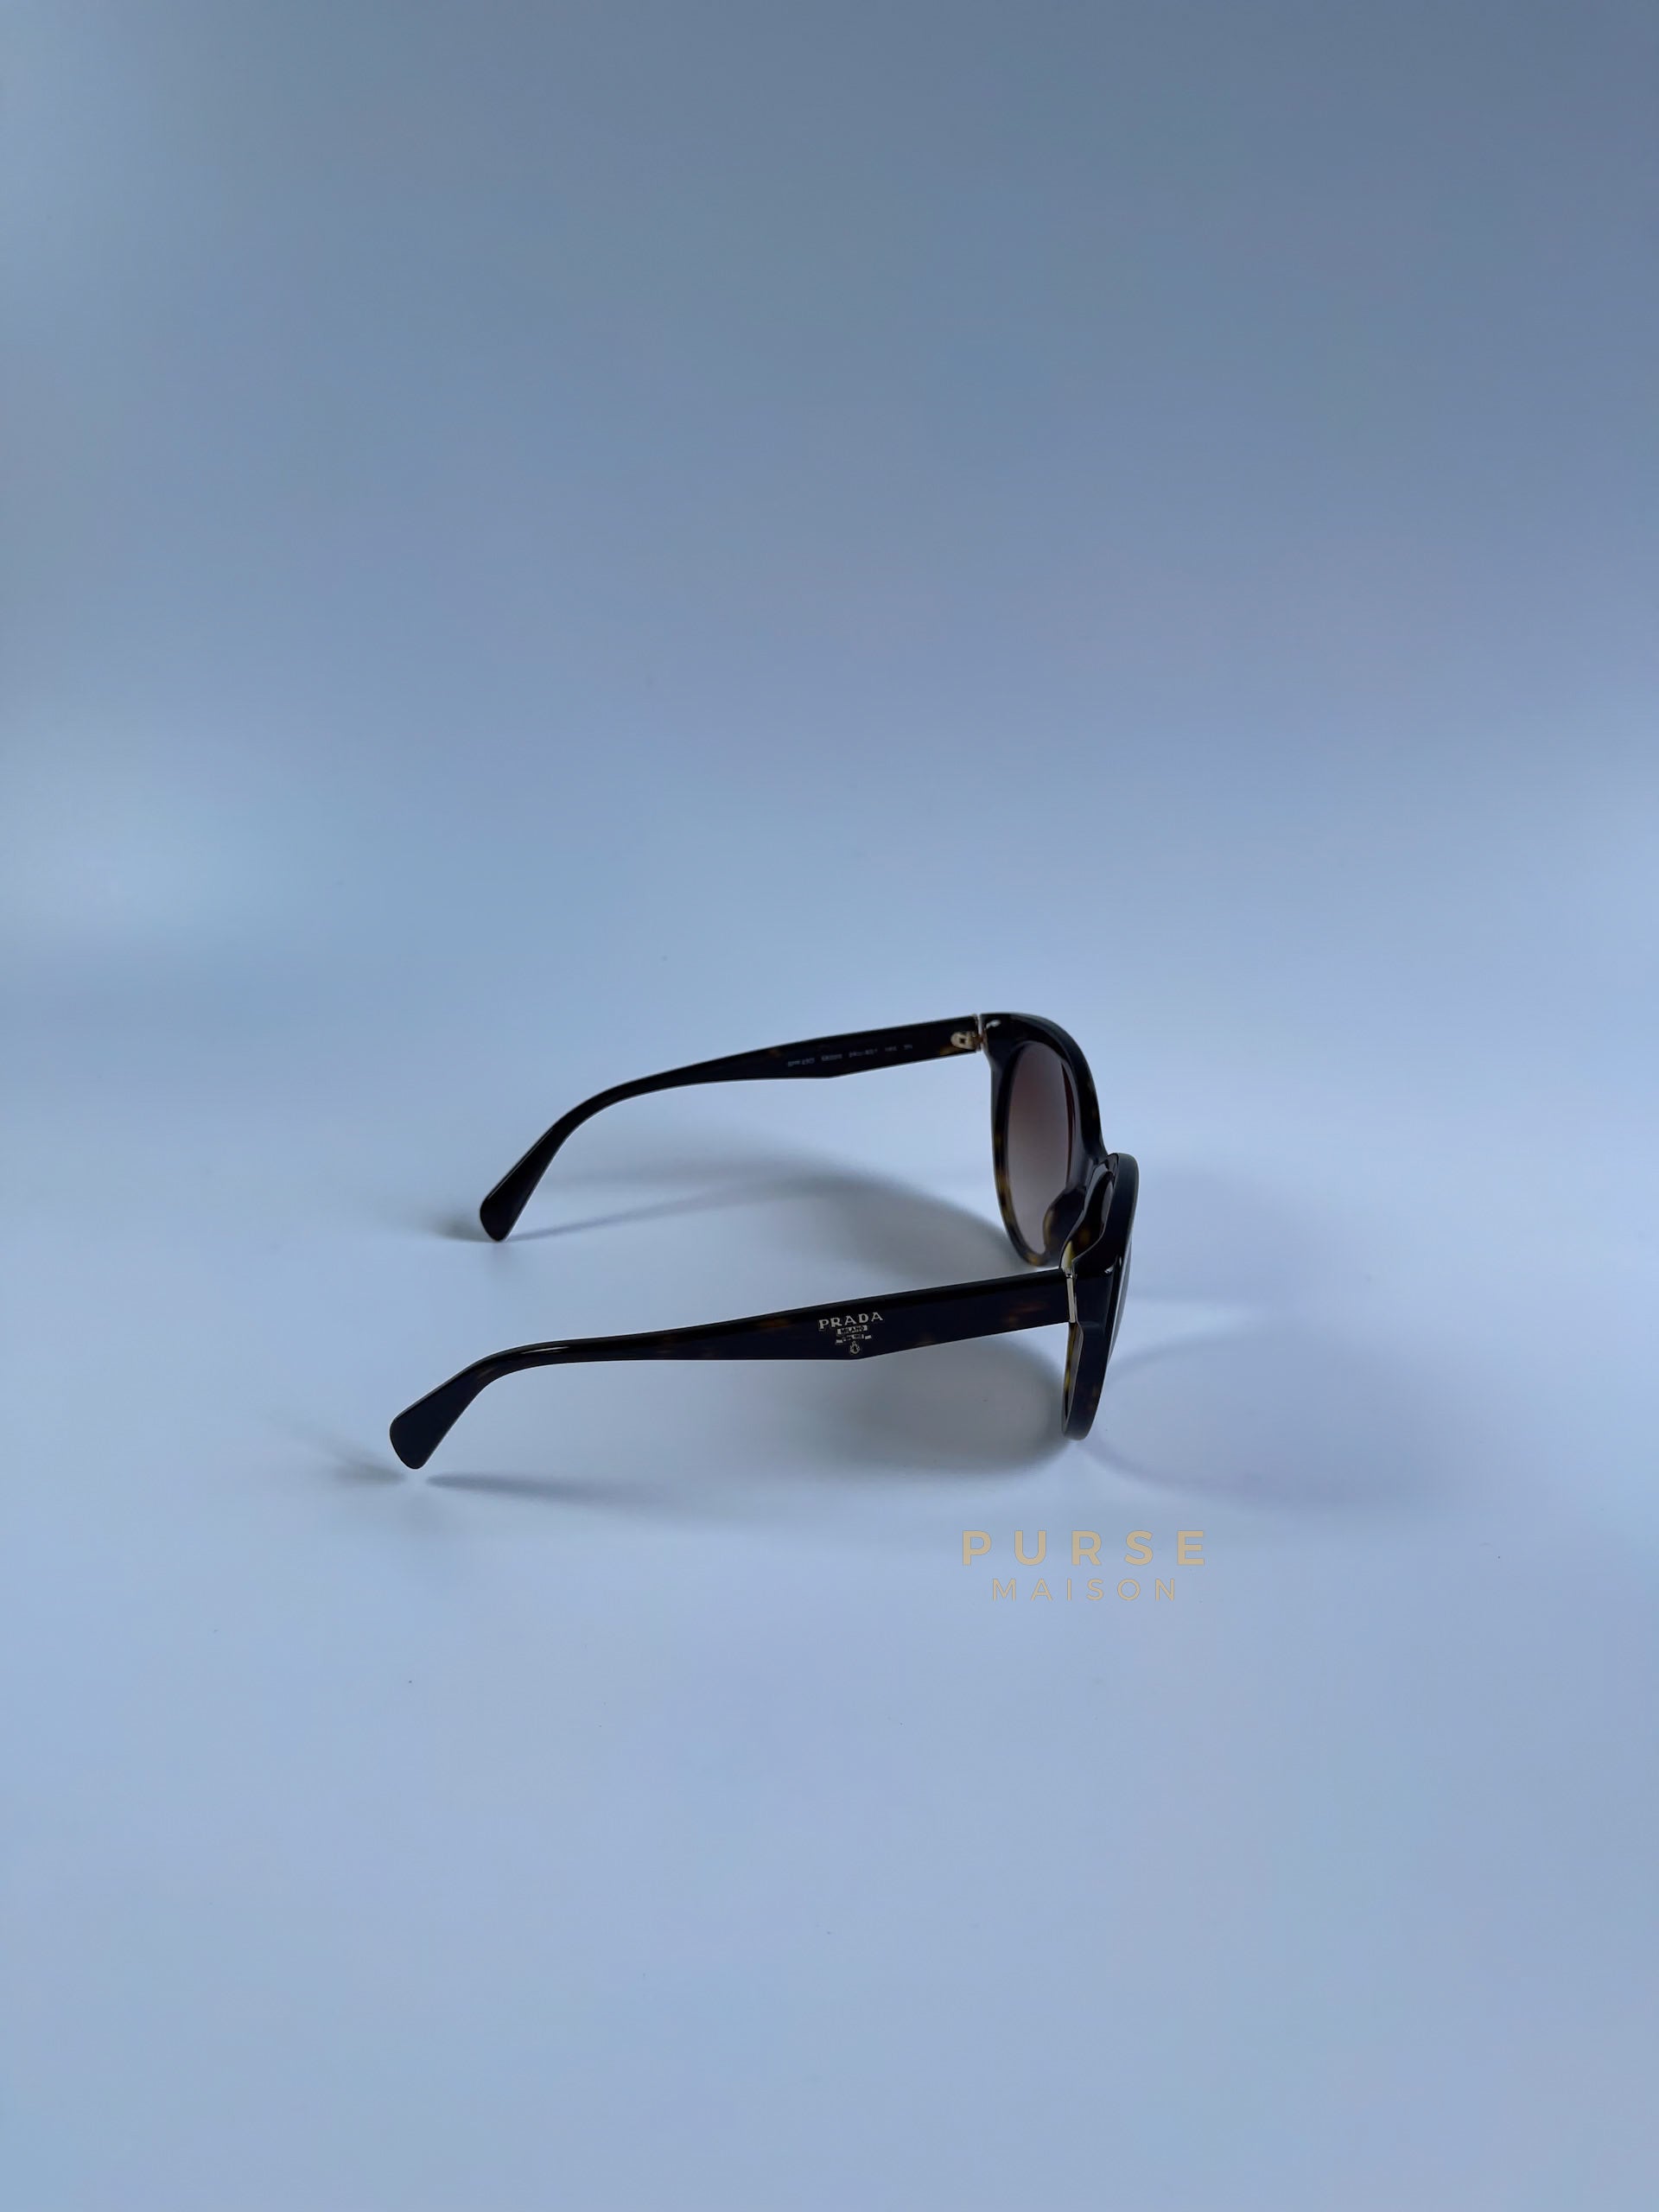 Spr 230 Sunglasses | Purse Maison Luxury Bags Shop